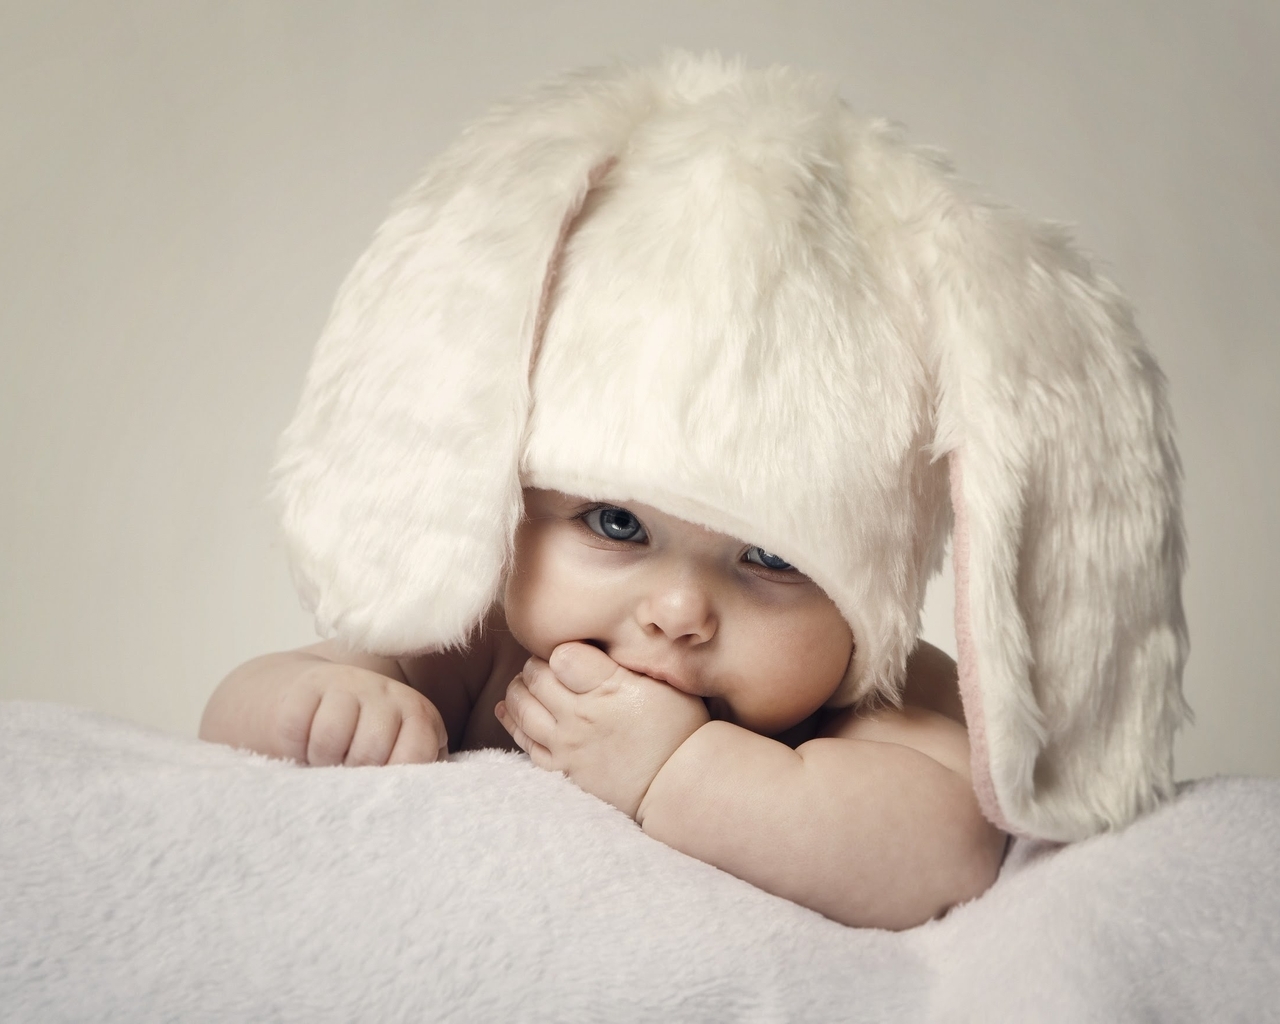 Картинка: Малыш, ребёнок, глазки, взгляд, шапка, ушки, белая